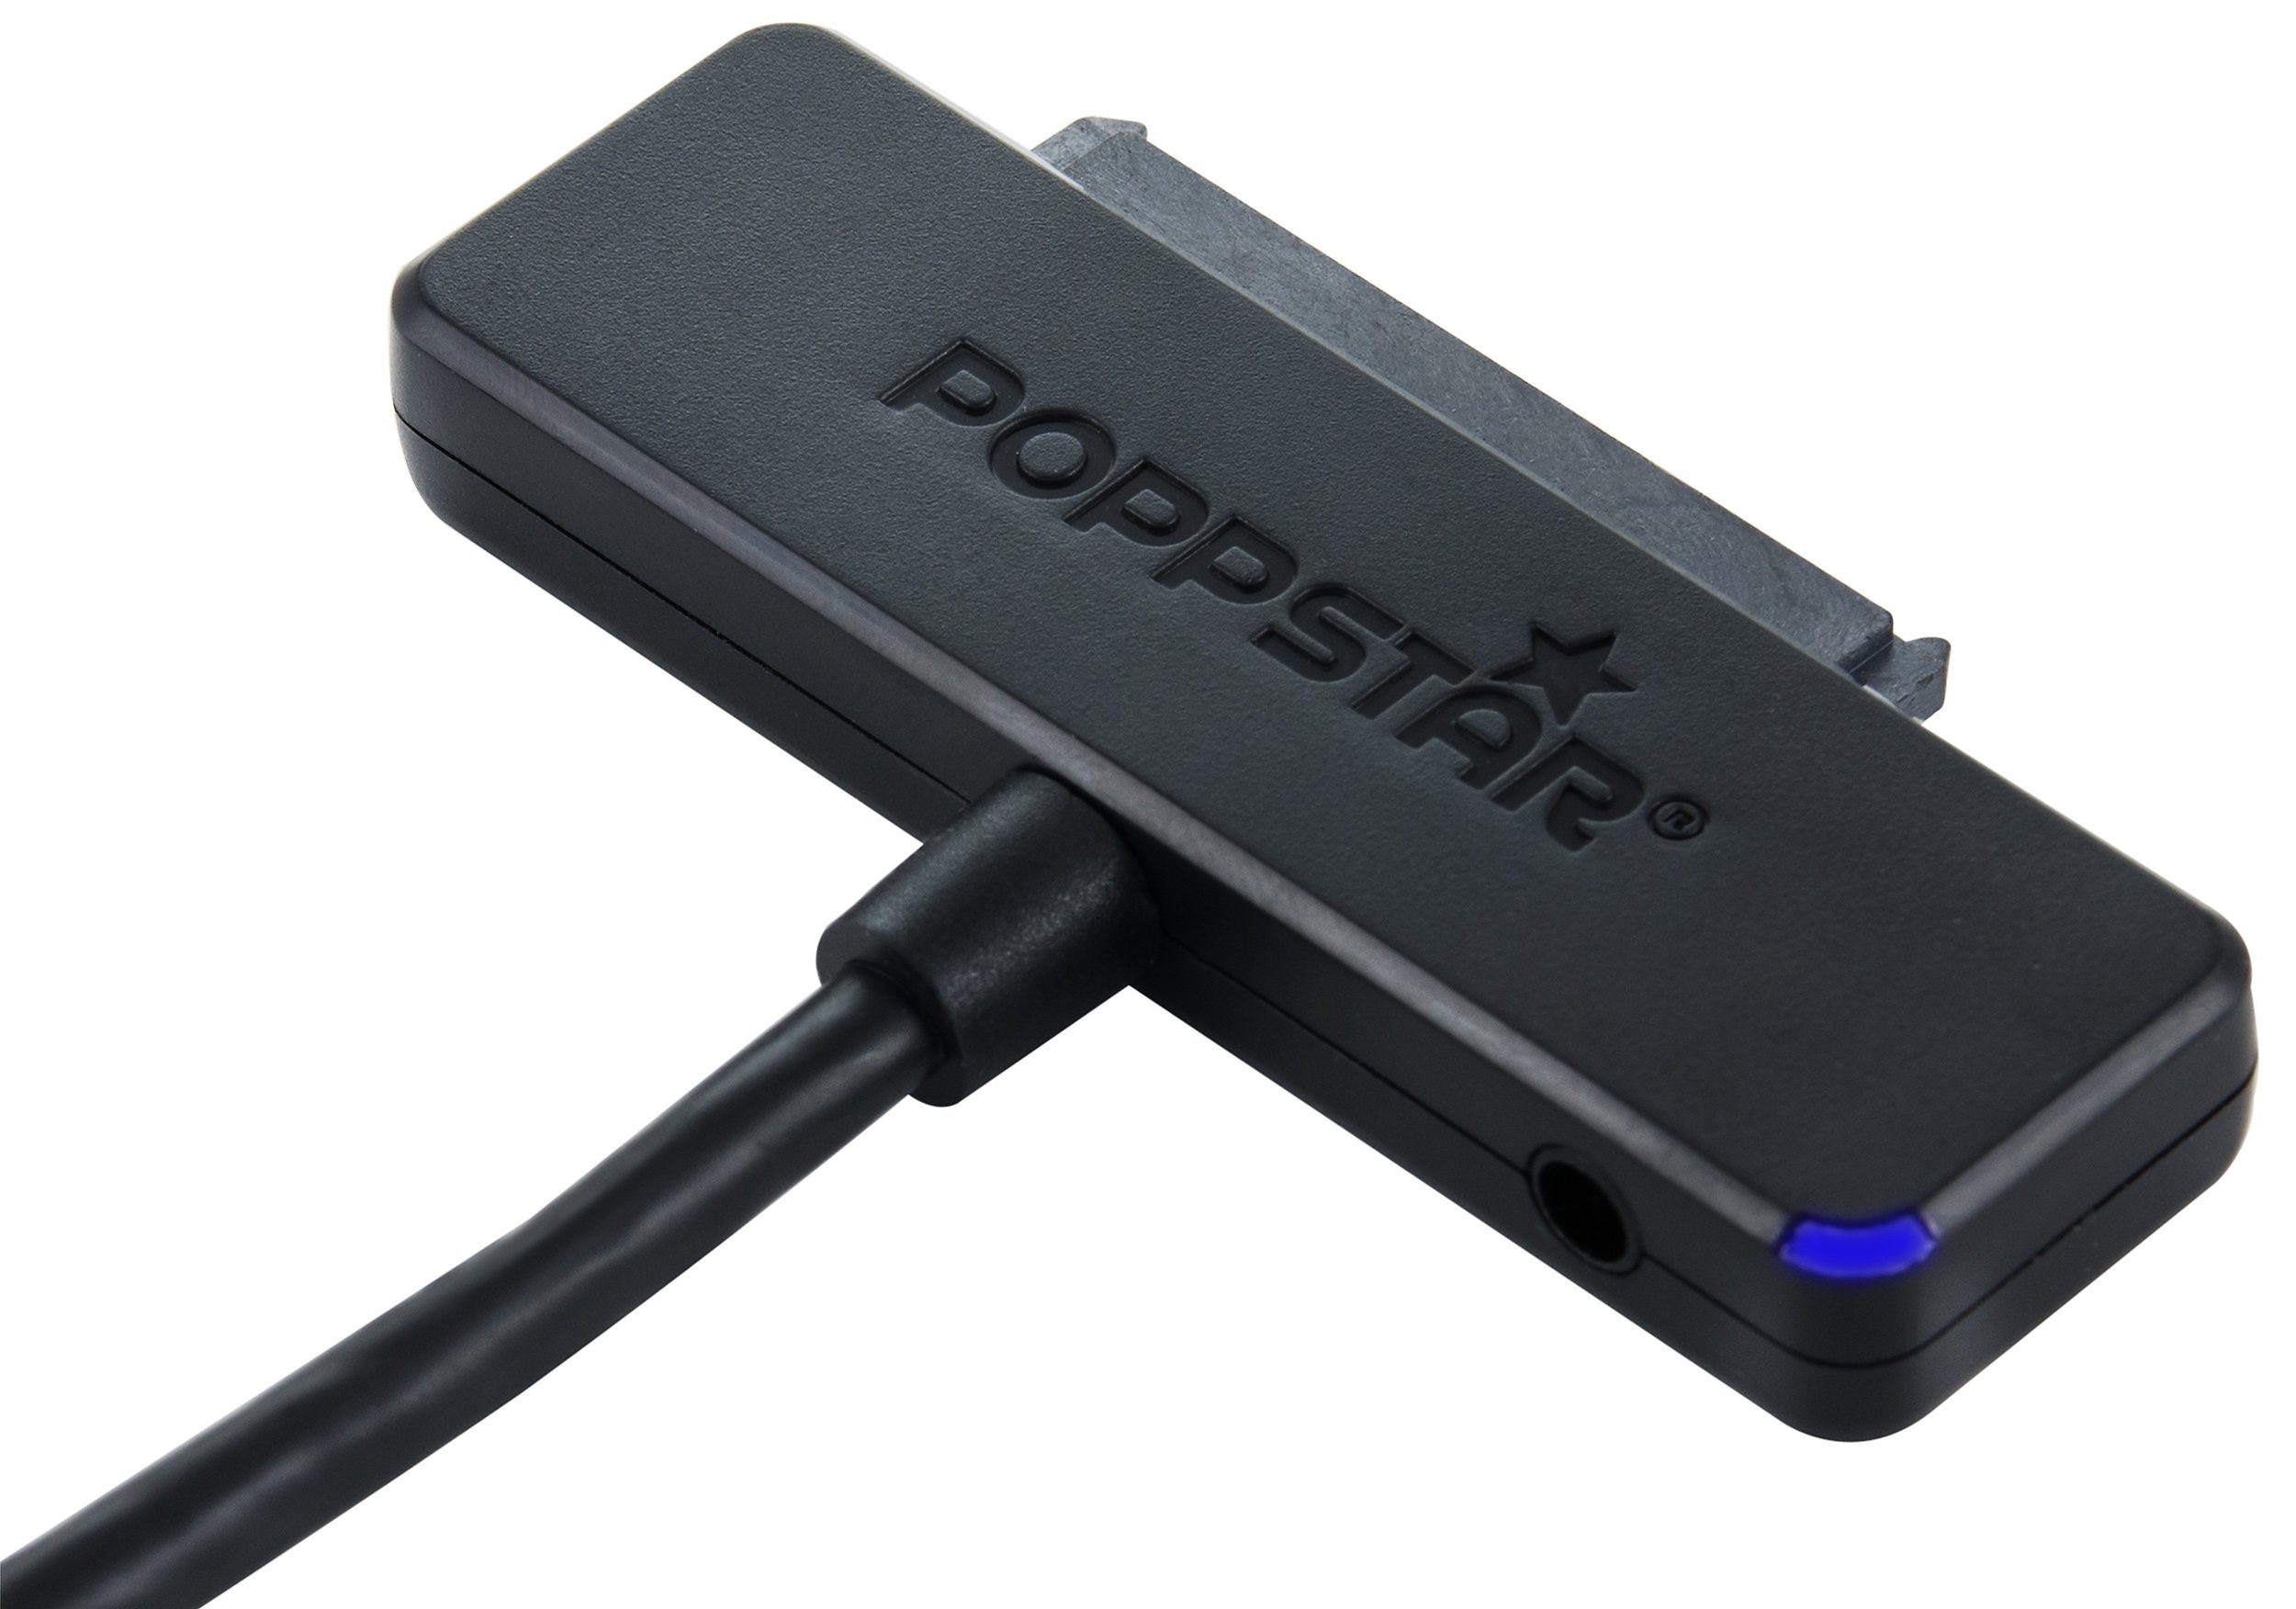 Poppstar Anschlusskabel für externe Festplatten USB-Adapter S-ATA zu USB-C, USB 3.1 Typ C Festplattenadapter SATA SSD 2,5/3,5" (ohne Netzteil)